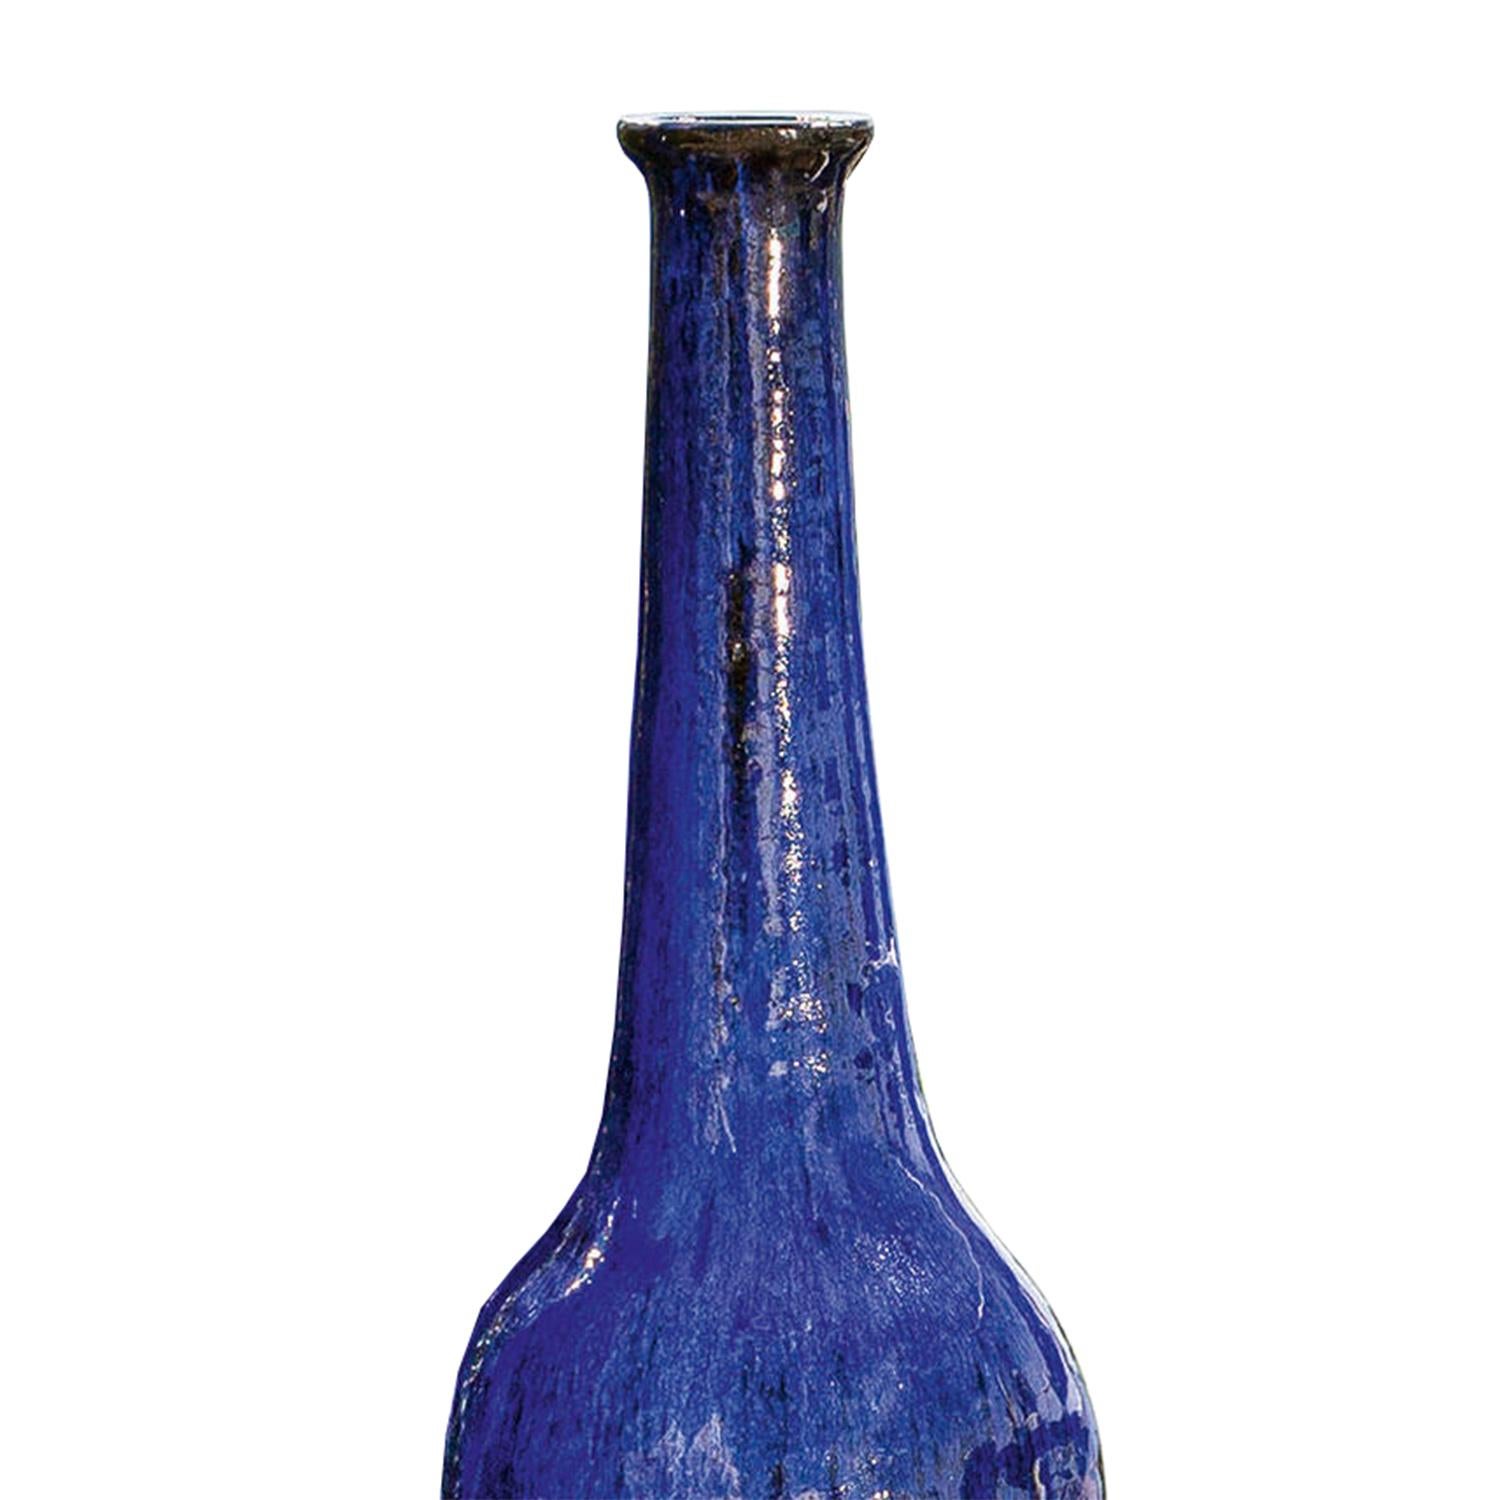 Vase Reed Blue Medium tout en céramique
en finition bleue. Chaque pièce est unique en raison
à la technique de production de la céramique.